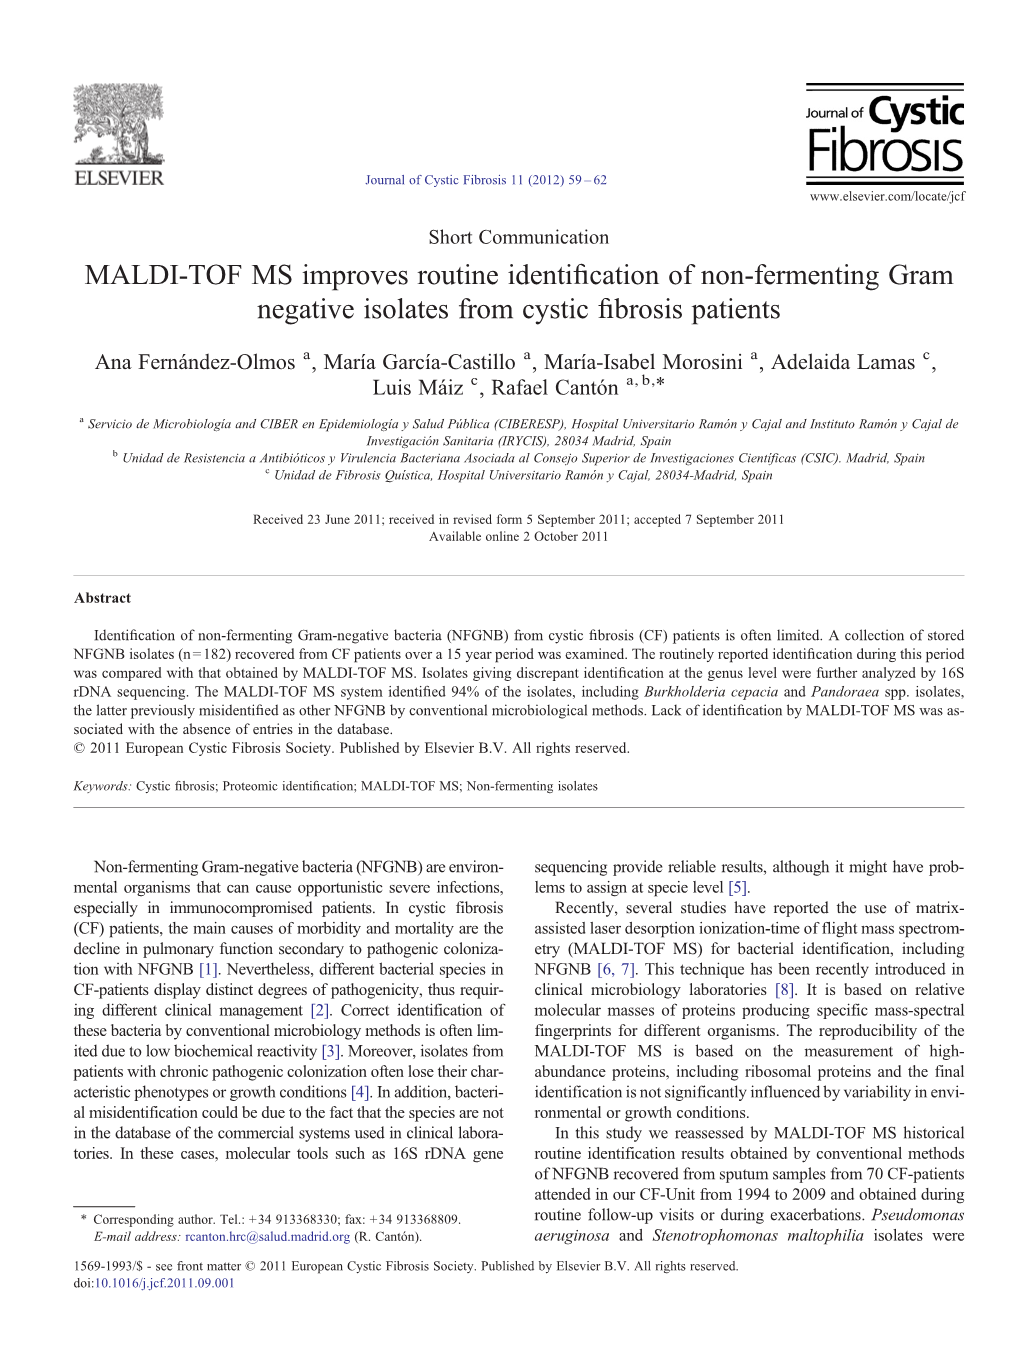 MALDI-TOF MS Improves Routine Identification of Non-Fermenting